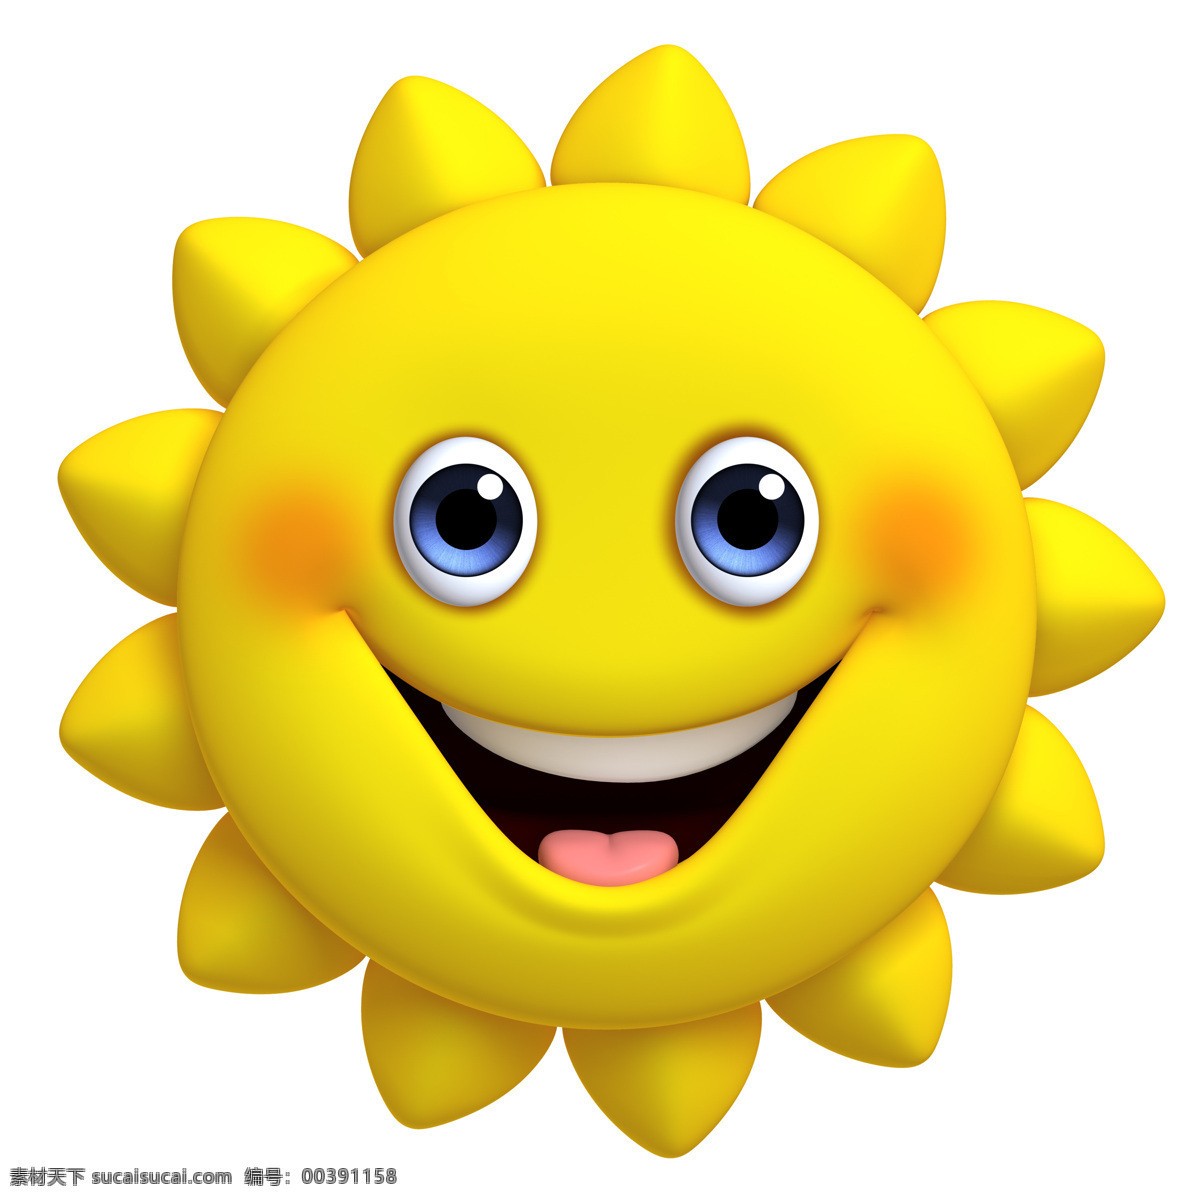 卡通太阳 夏 太阳镜 太阳公公 墨镜 可爱太阳 生活百科 生活素材